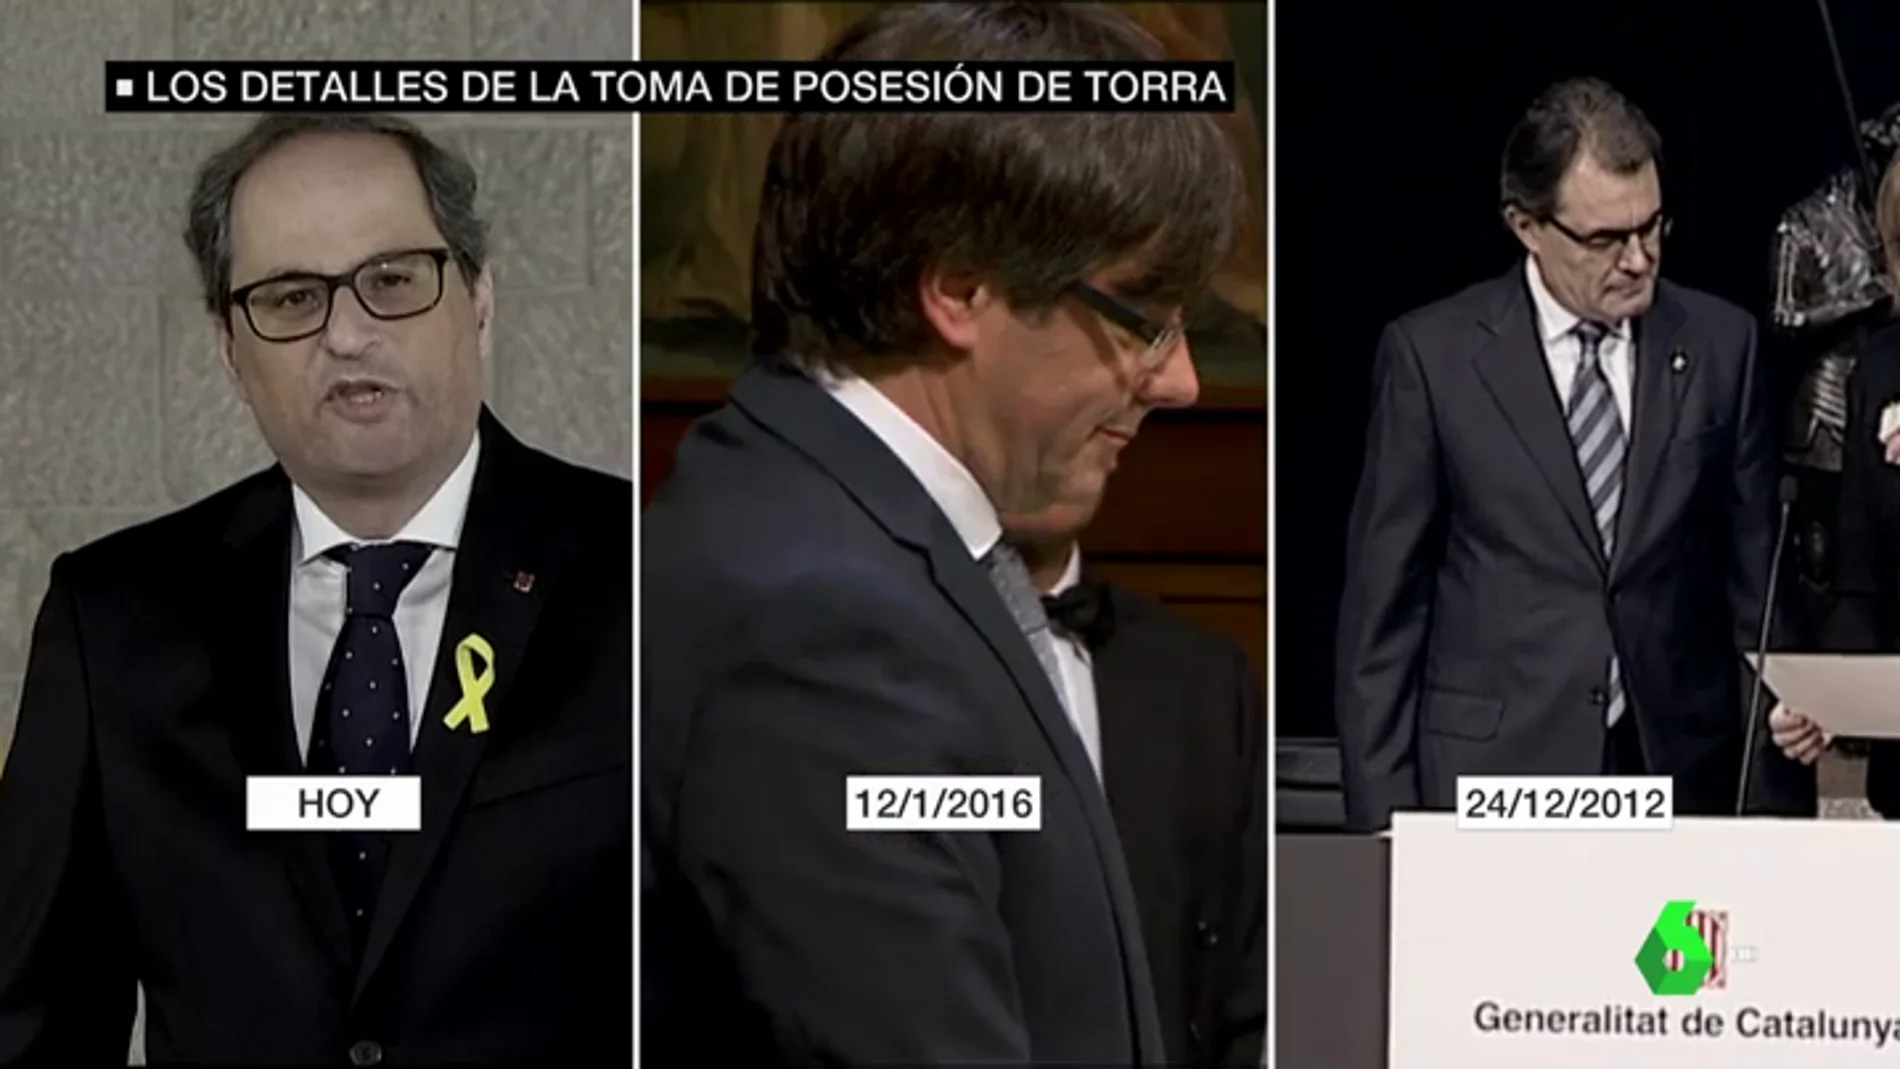 Imagen comparativa de las tomas de posesión de Torra, Puigdemont y Mas